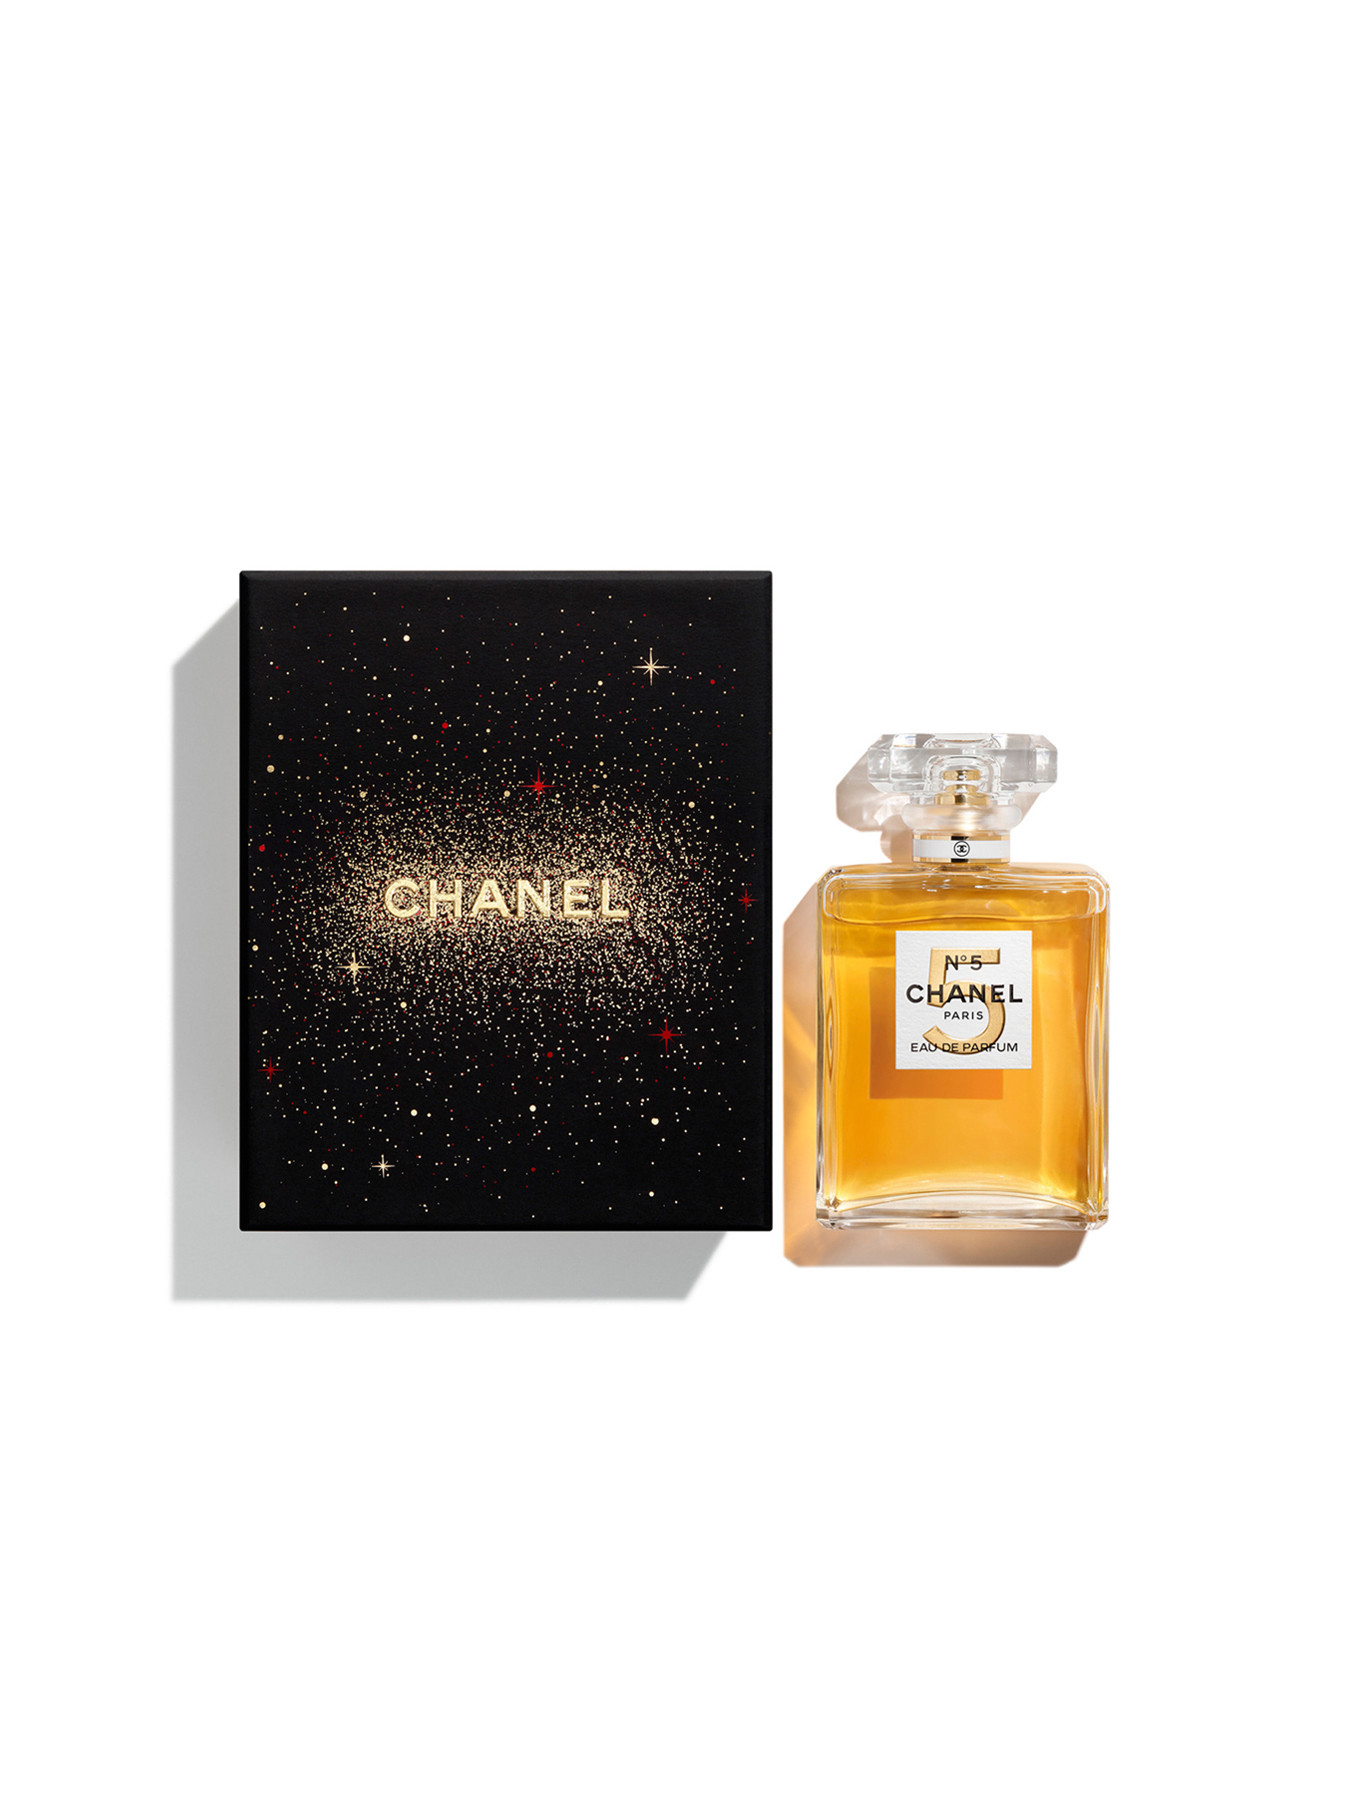 Gángster Formular nuez CHANEL N°5 Eau De Parfum 2021 Limited Edition 100ML With Gift Box | Fenwick